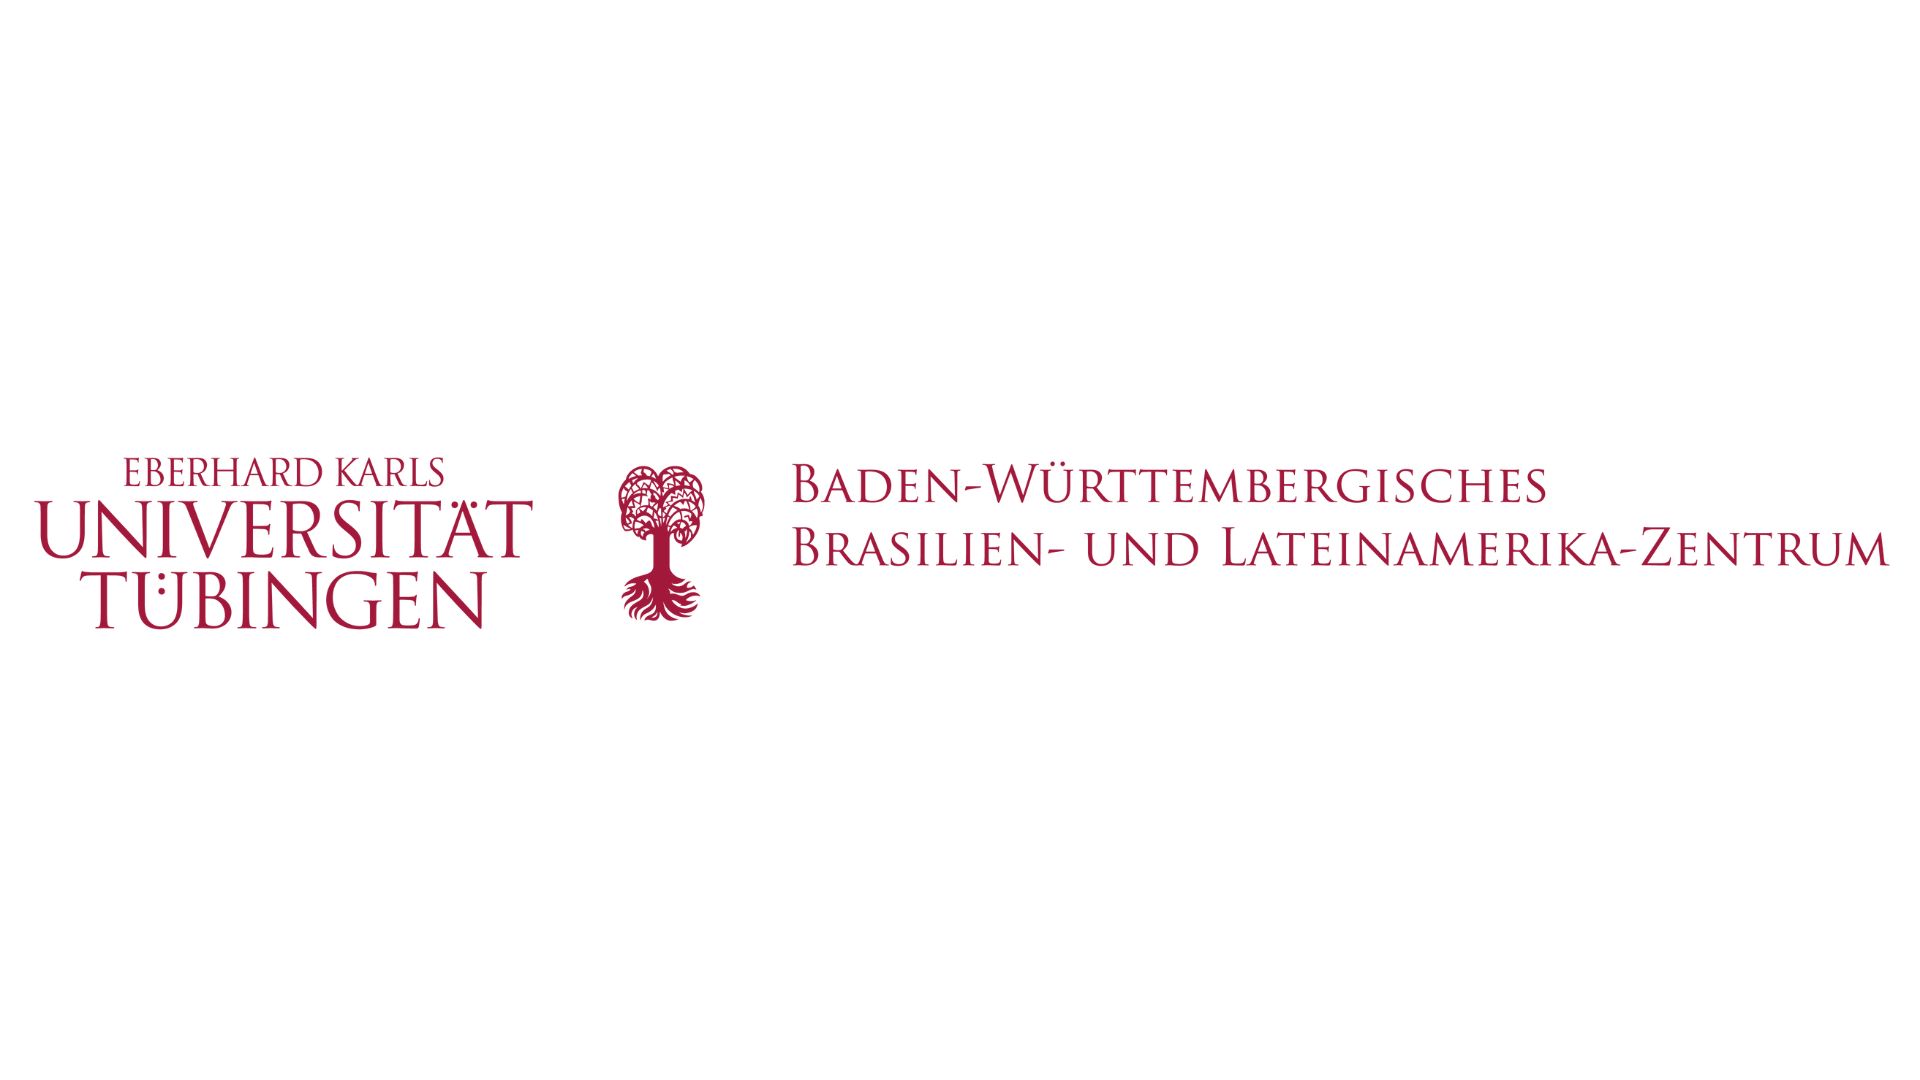 Baden-Württemberg Center for Brazil and Latin America of the University of Tübingen